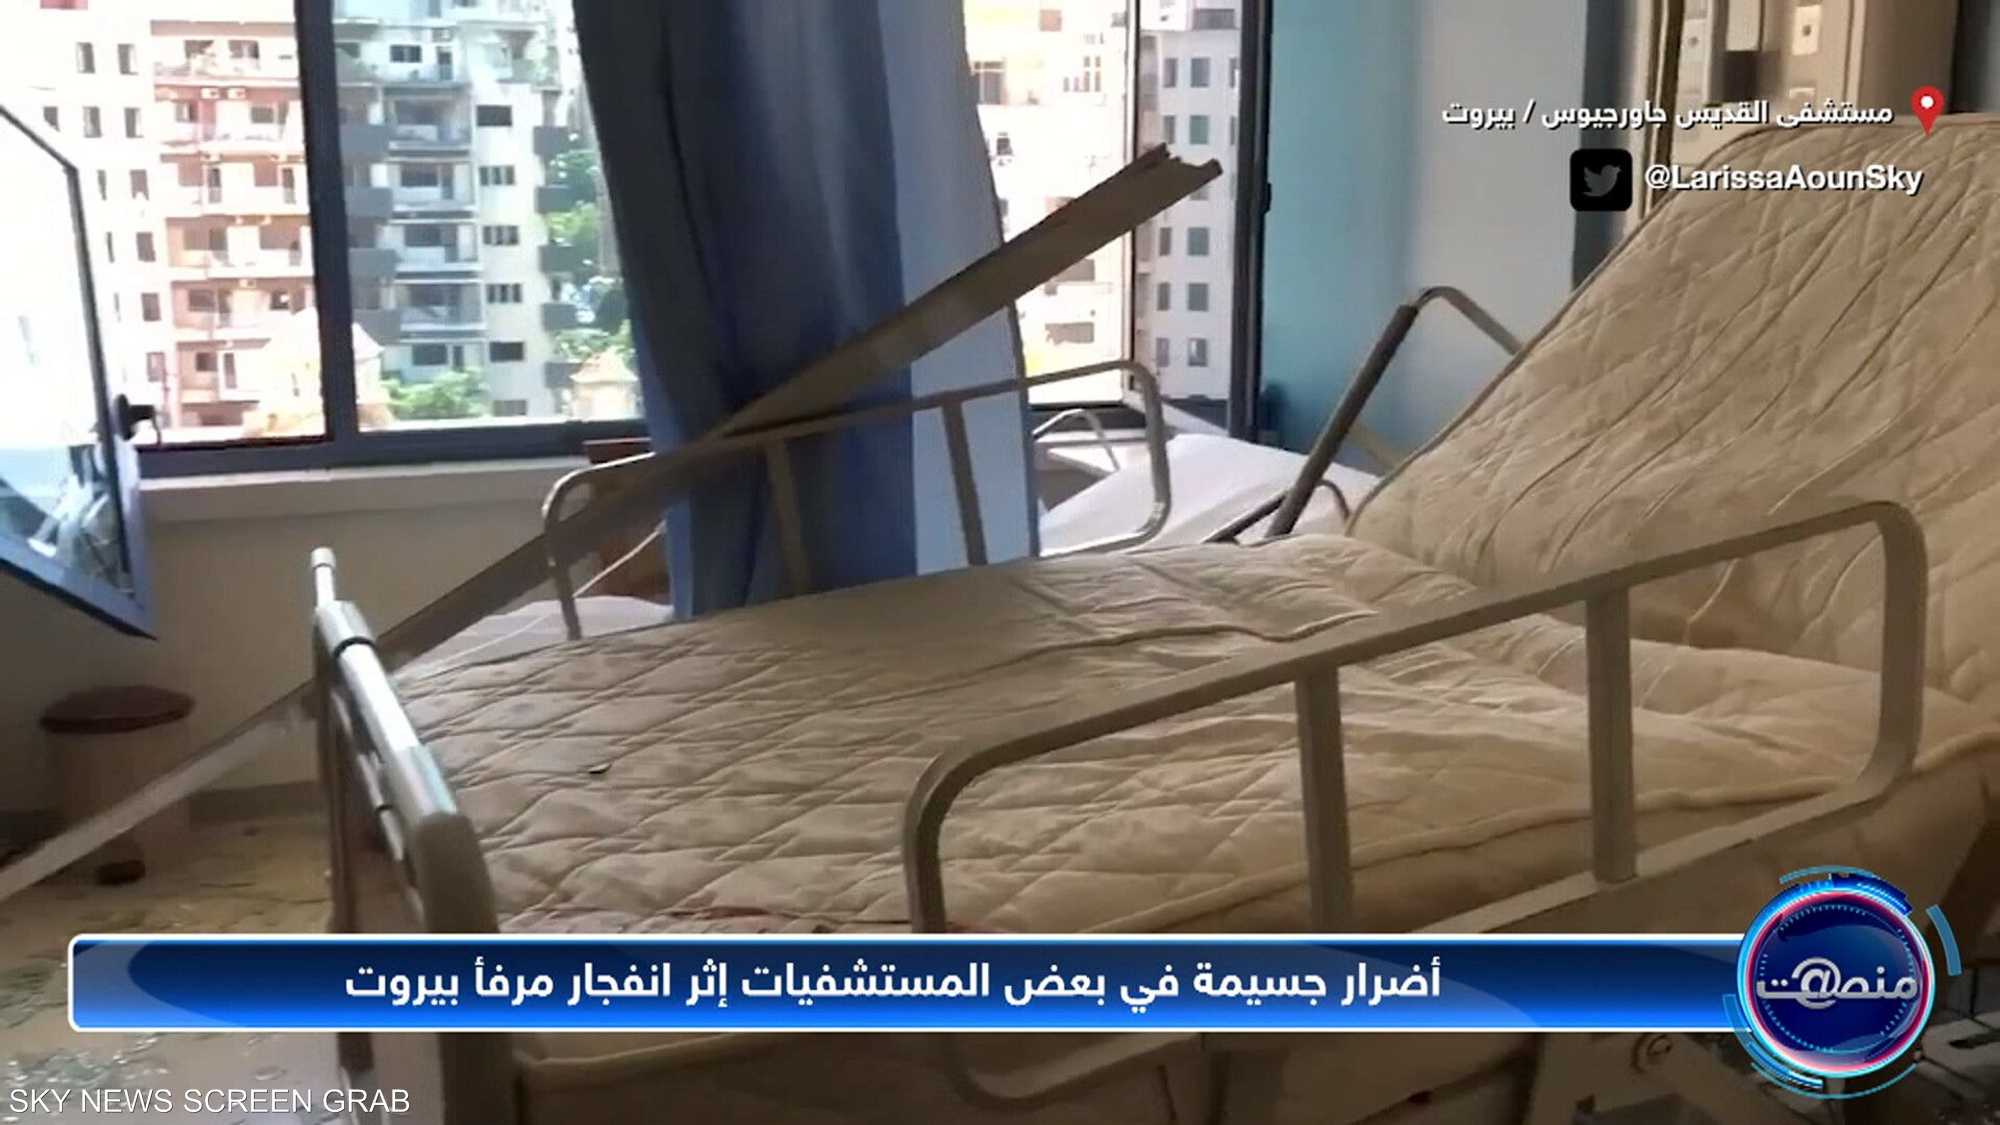 أضرار جسيمة في بعض المستشفيات إثر انفجار مرفأ بيروت